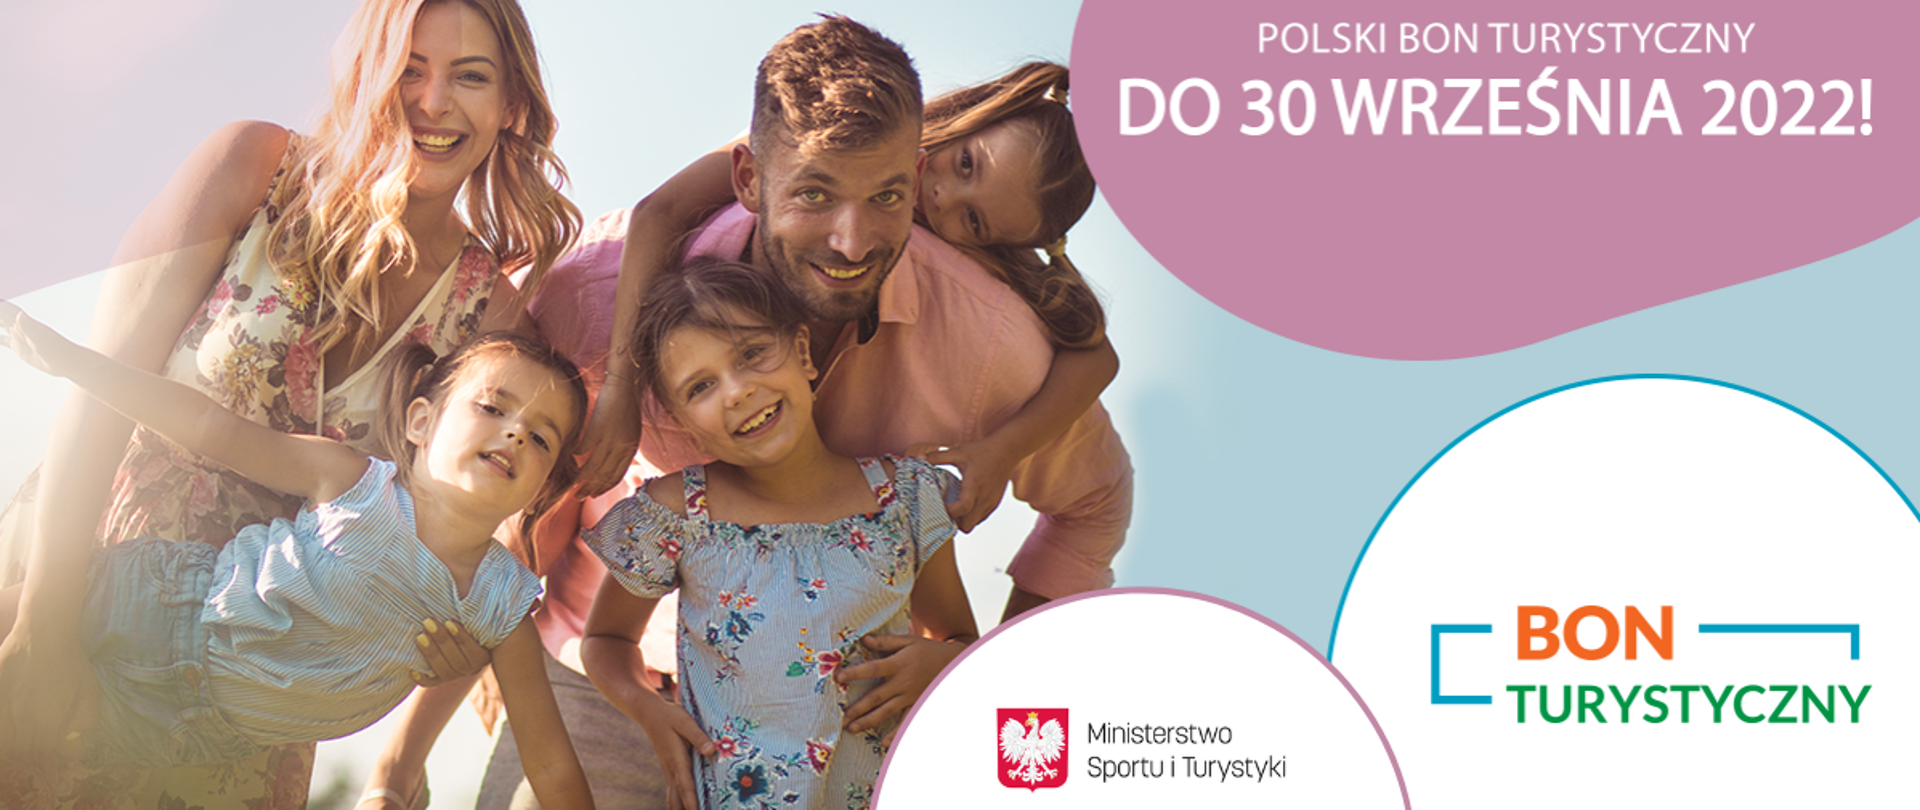 Wykorzystaj Polski Bon Turystyczny do 30 września 2022 roku!